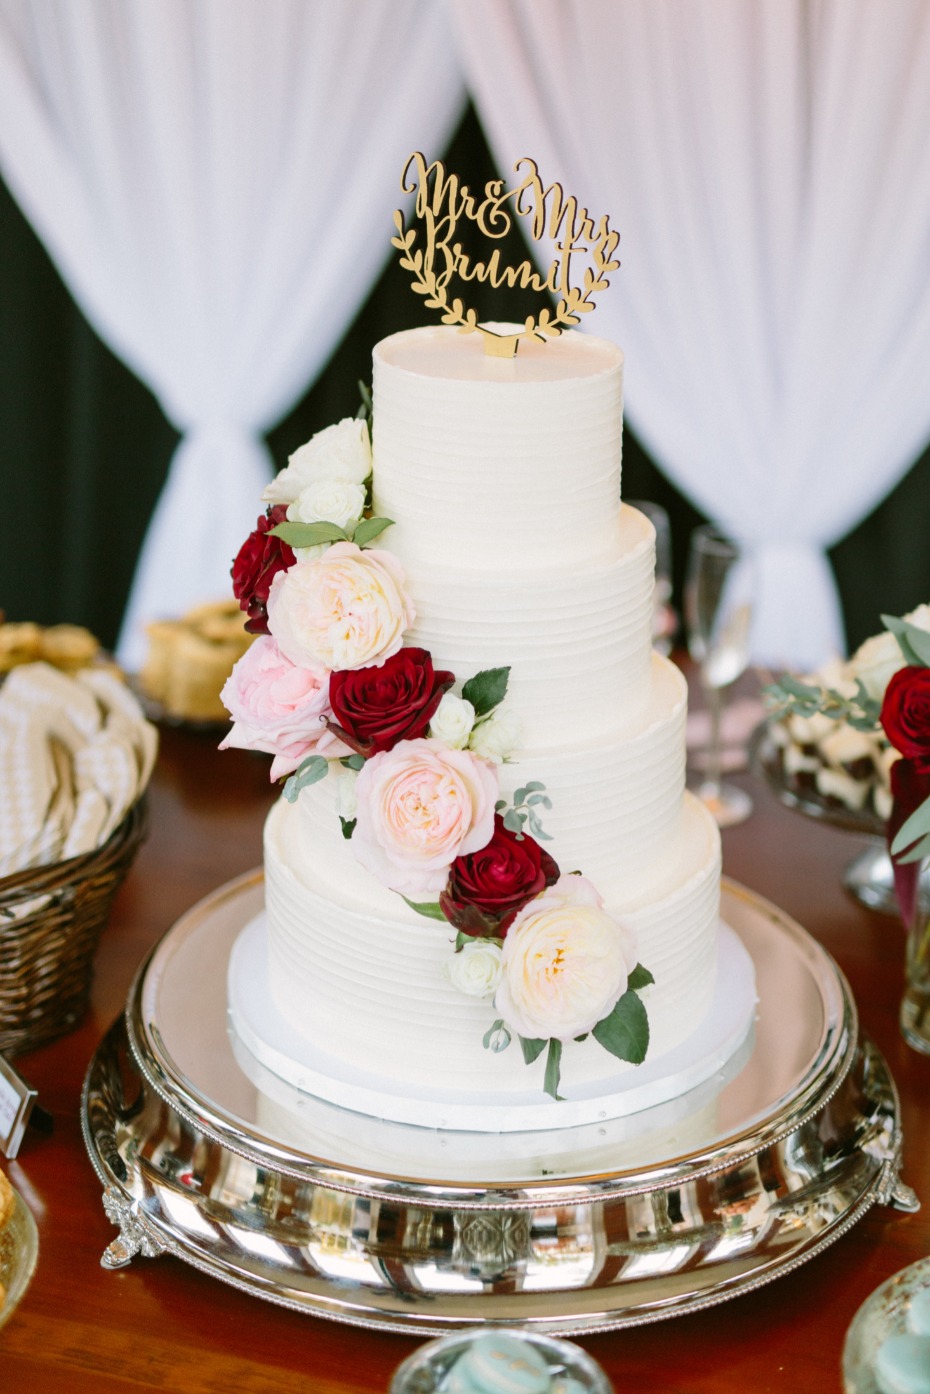 White wedding cake with cascading roses